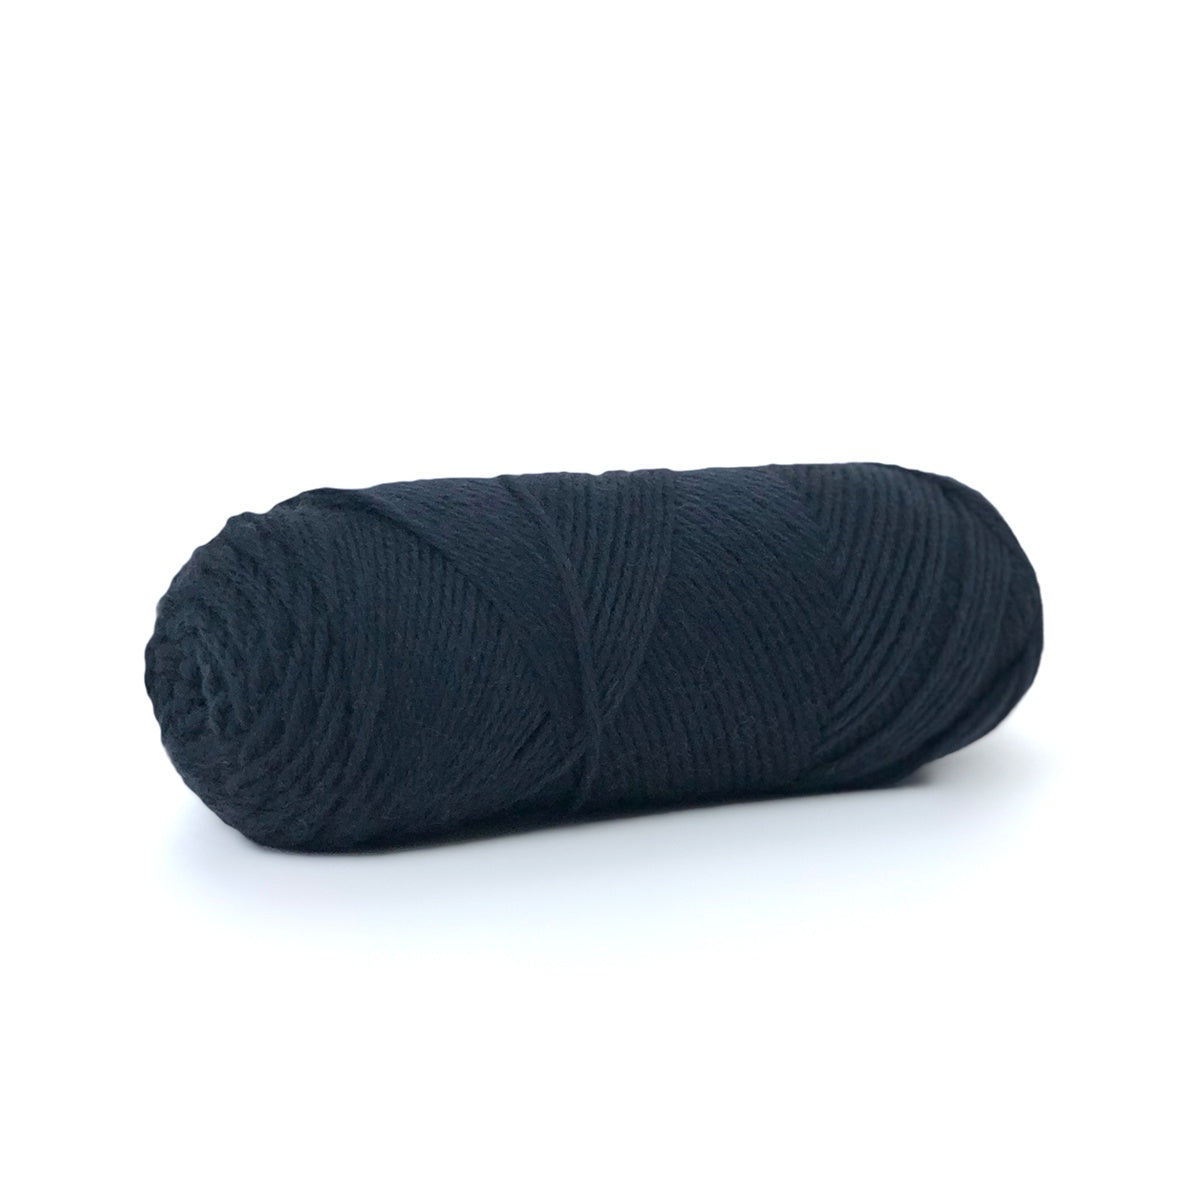 Sille Slipover Kit, Size 1 (Black)